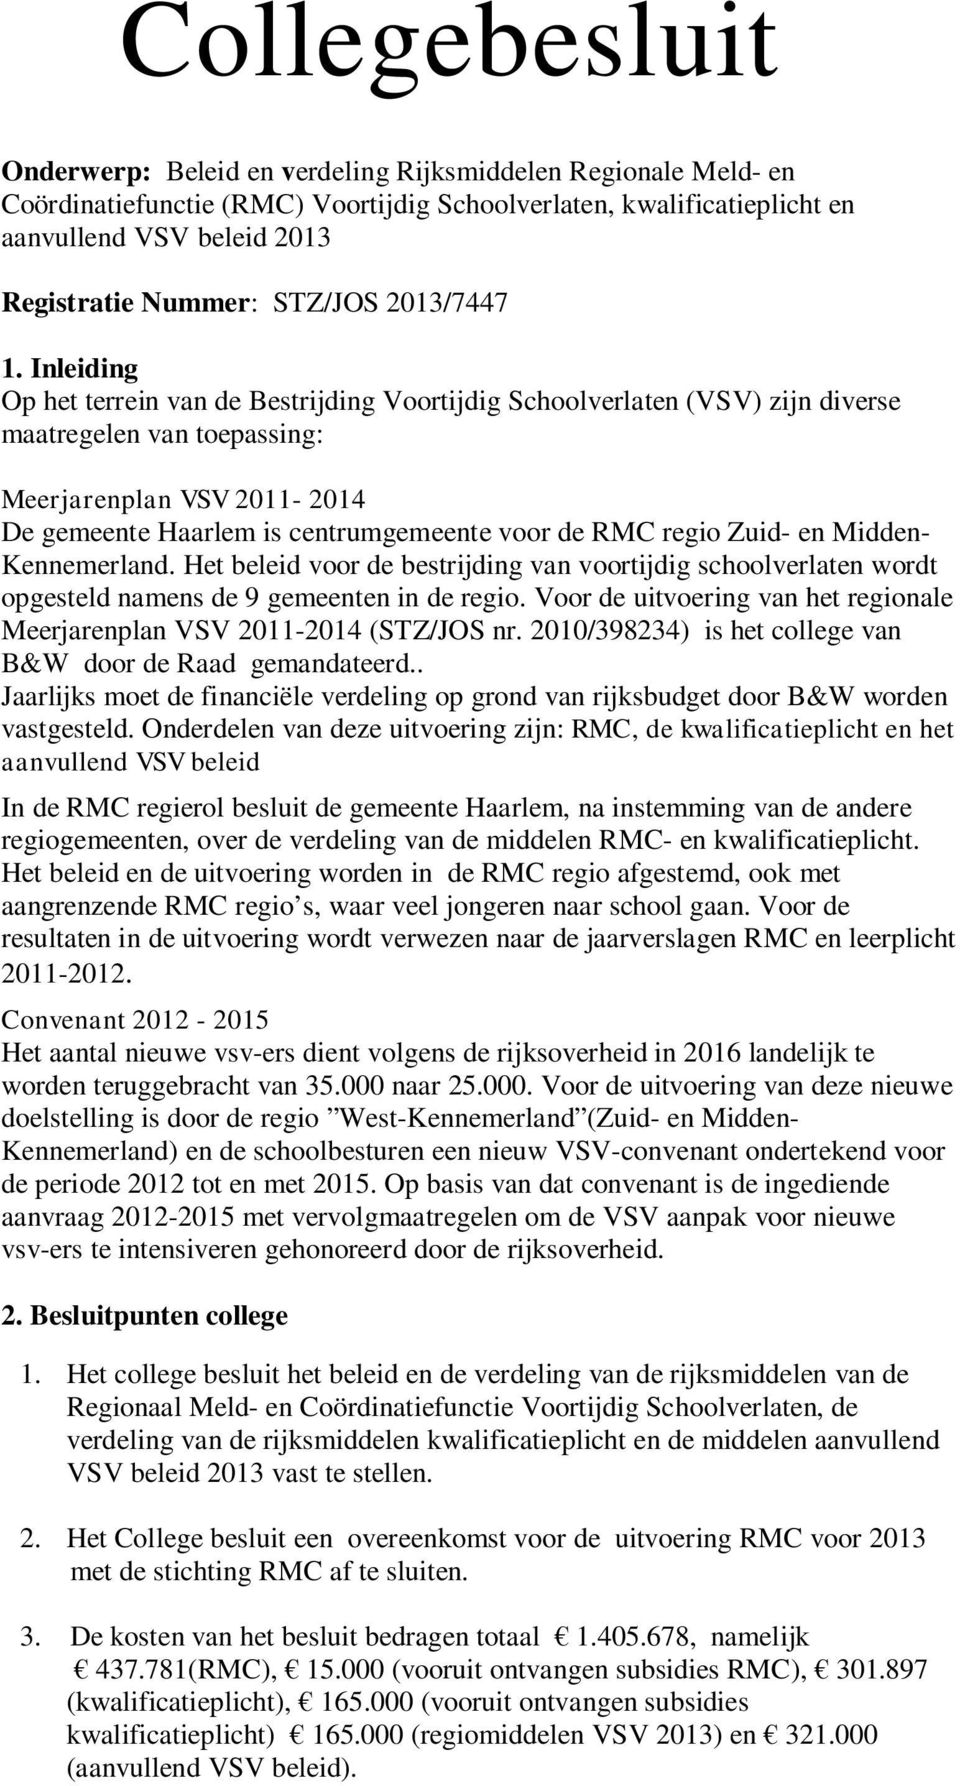 Inleiding Op het terrein van de Bestrijding Voortijdig Schoolverlaten (VSV) zijn diverse maatregelen van toepassing: Meerjarenplan VSV 2011-2014 De gemeente Haarlem is centrumgemeente voor de RMC